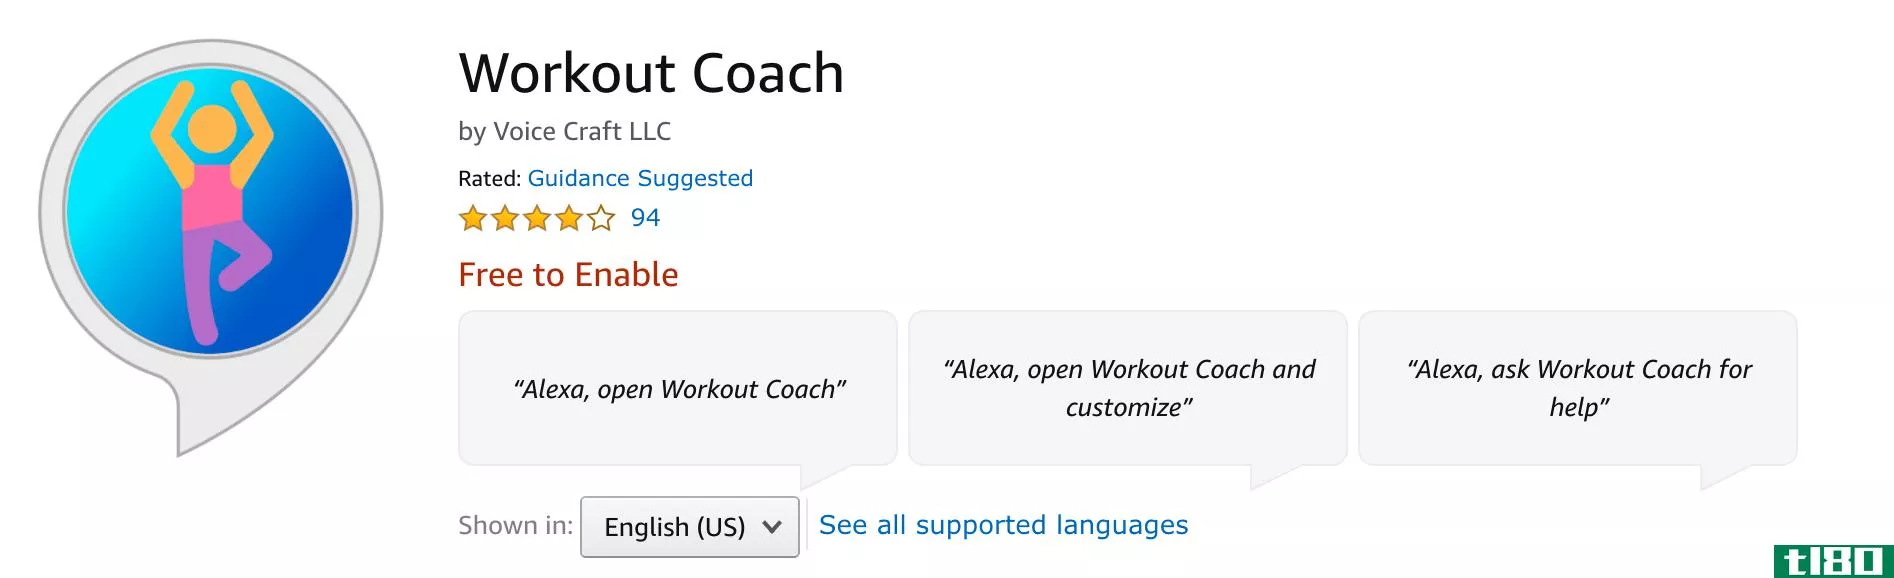 Workout Coach Logo